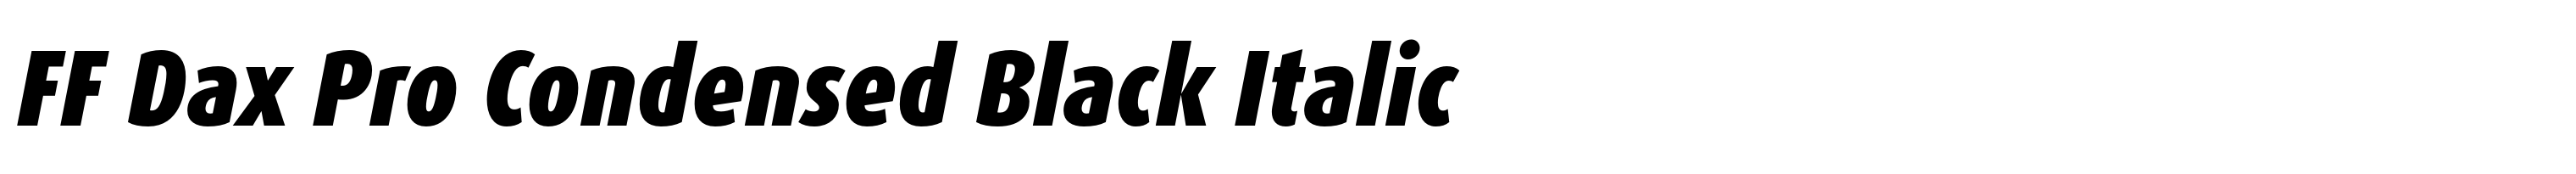 FF Dax Pro Condensed Black Italic